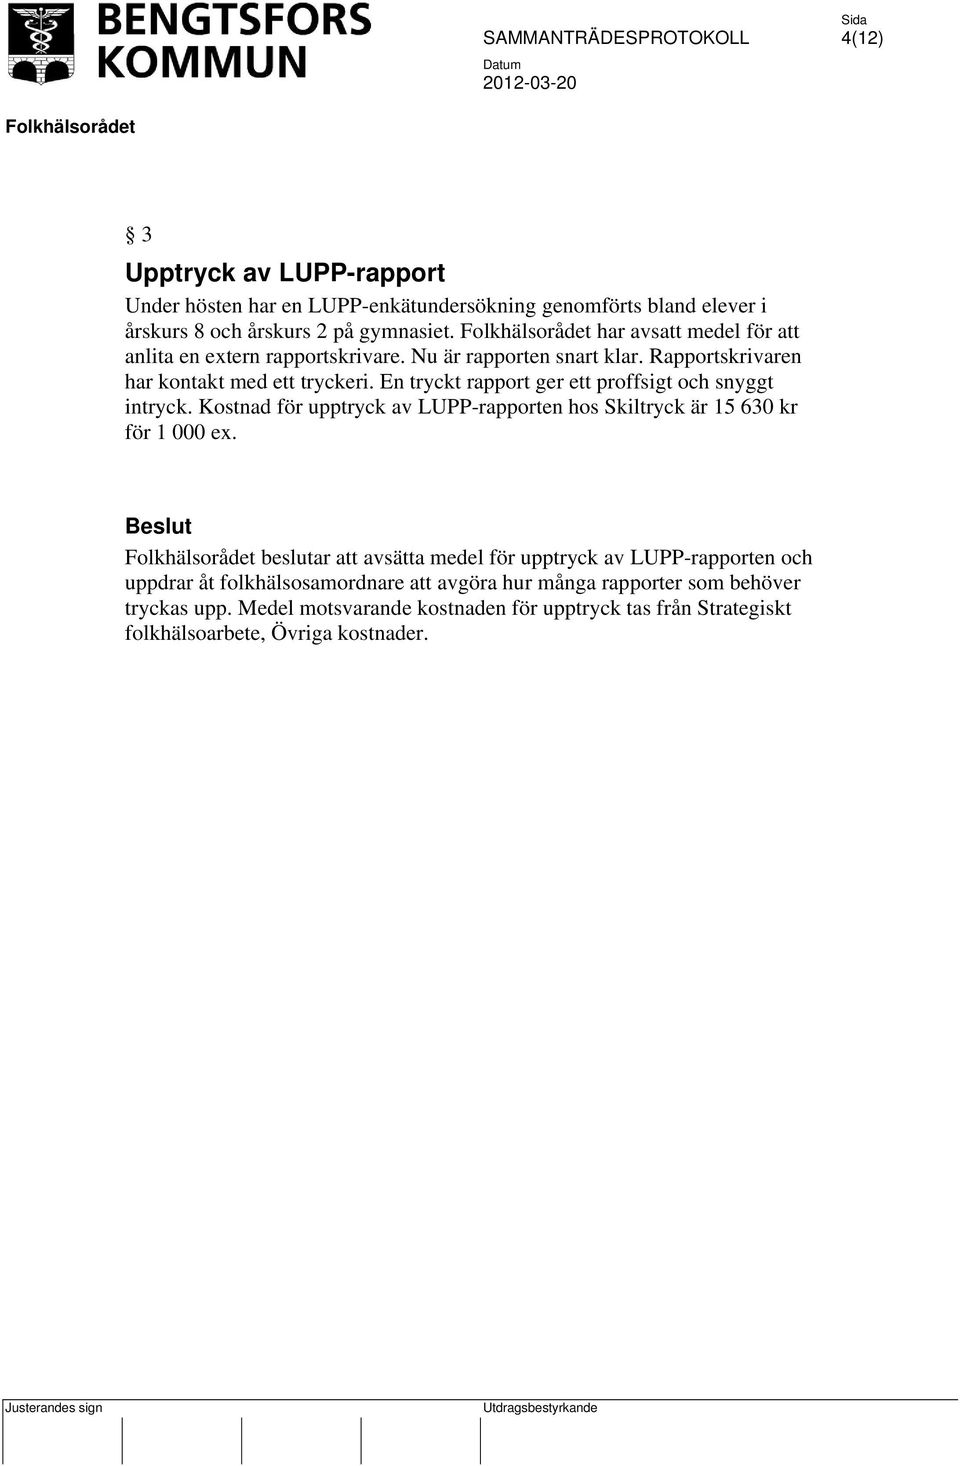 En tryckt rapport ger ett proffsigt och snyggt intryck. Kostnad för upptryck av LUPP-rapporten hos Skiltryck är 15 630 kr för 1 000 ex.